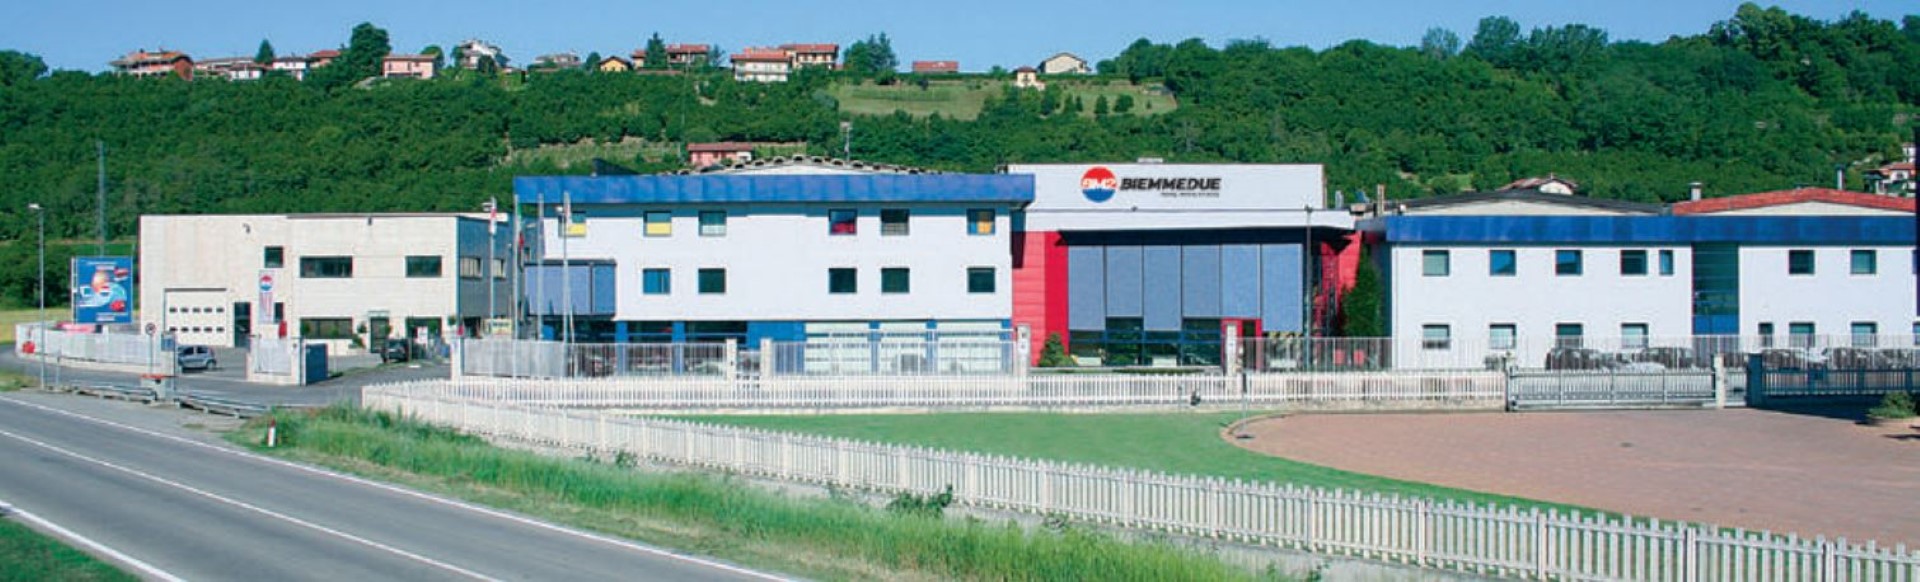 BM2 - Biemmedue - sídlo spoločnosti, výroba ohrievačov, odvlhčovačov, sklady